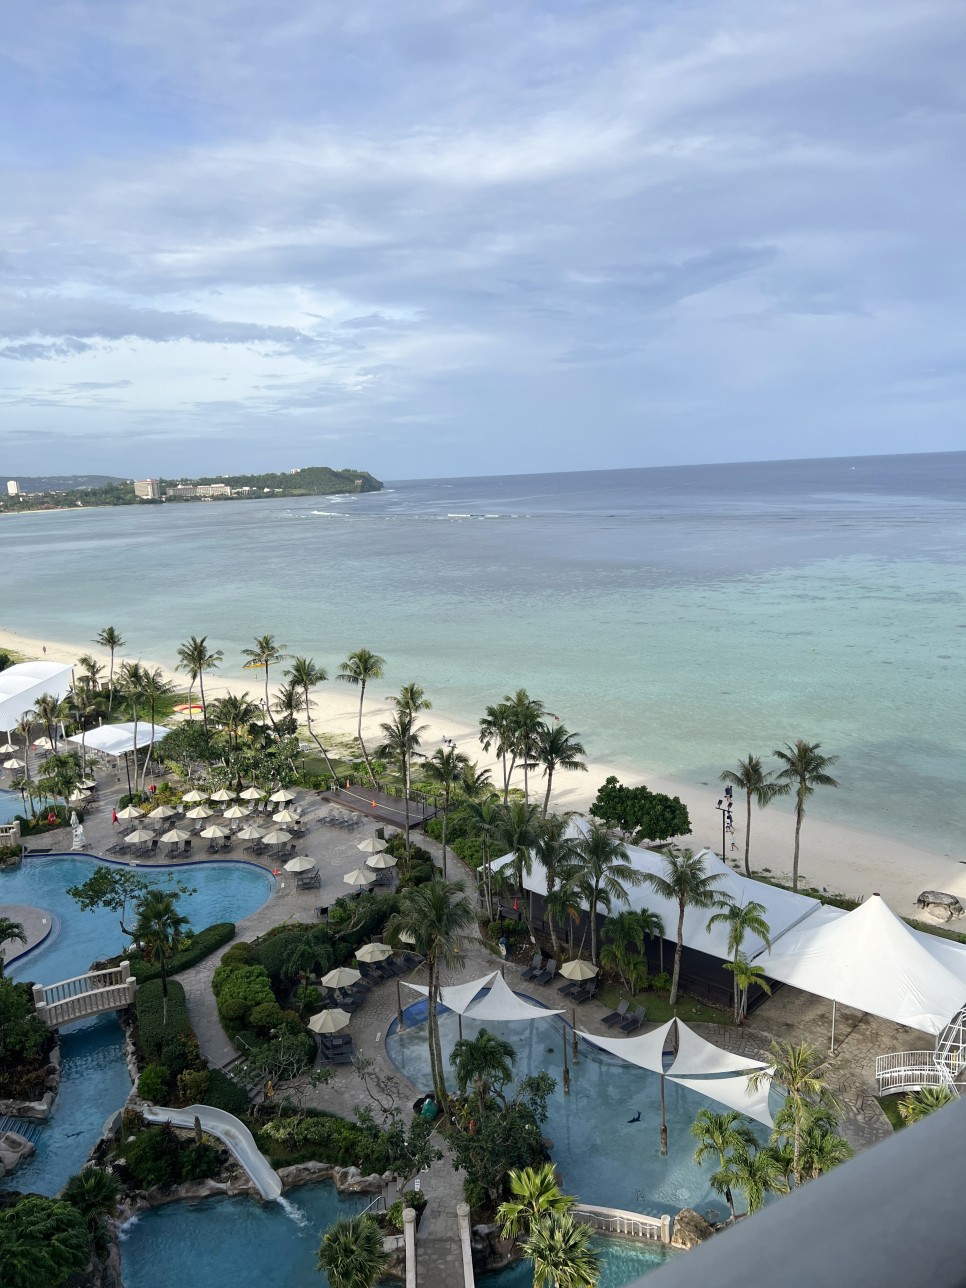 괌 두짓타니 호텔 장단점 츠바키호텔 비교